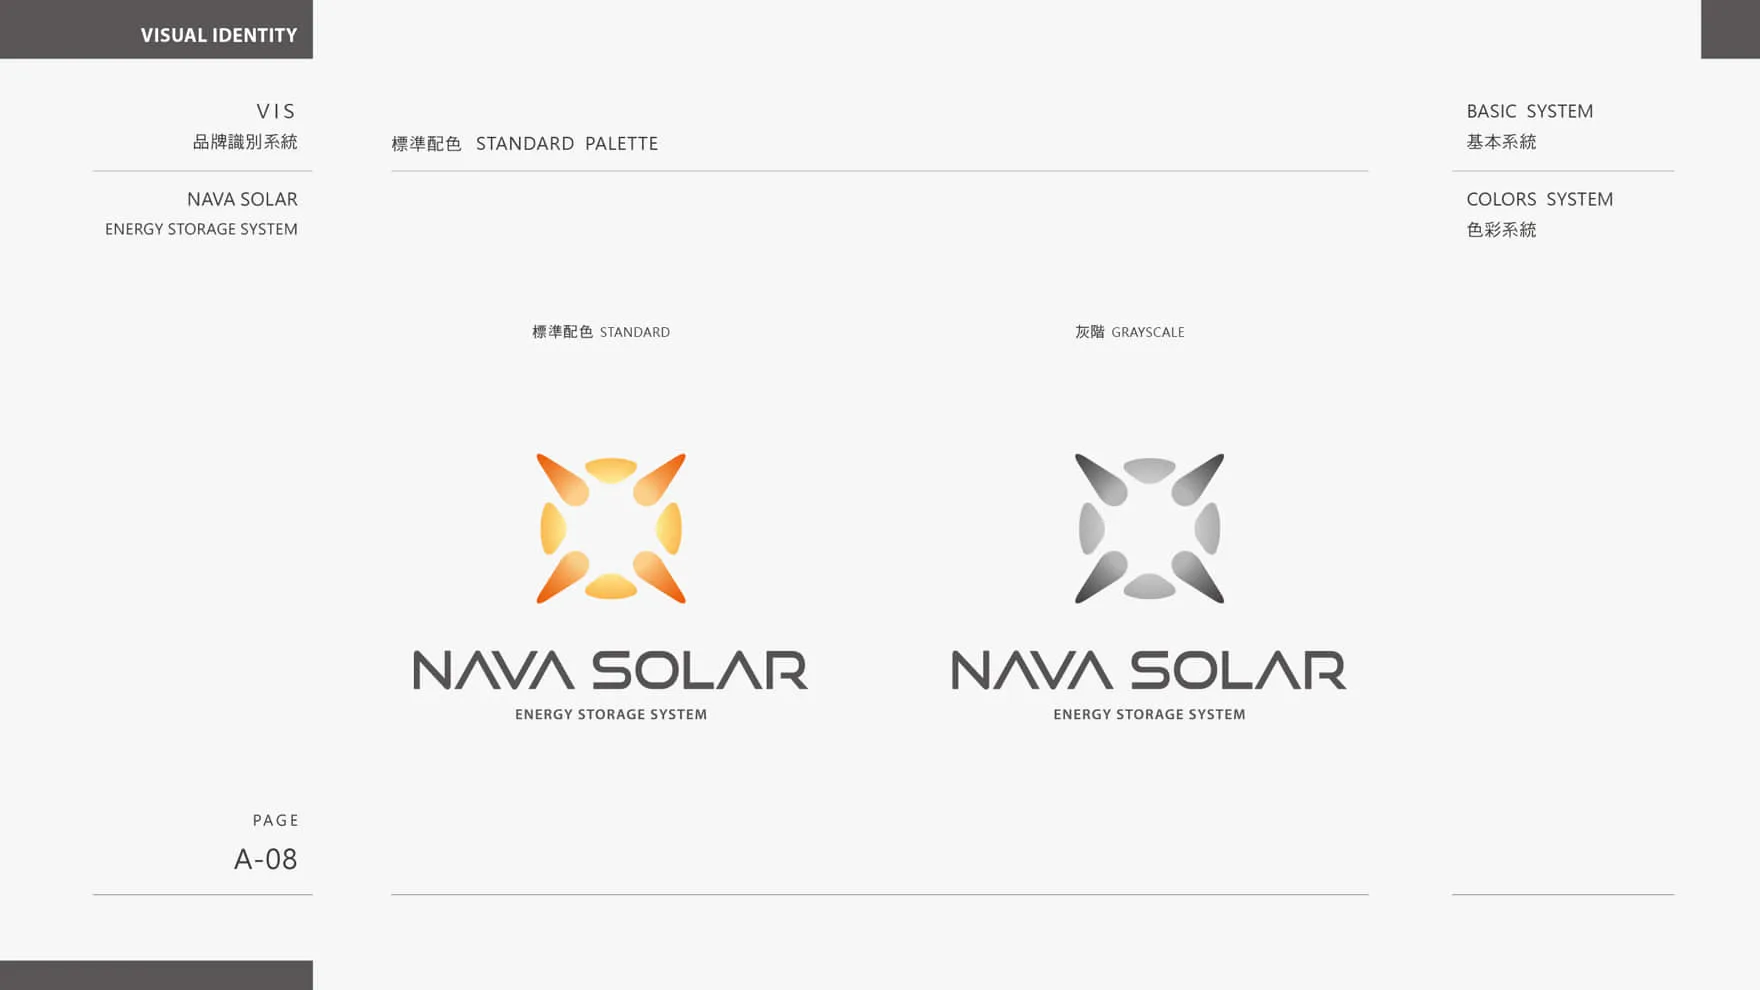 太陽能光電存儲品牌LOGO標準配色